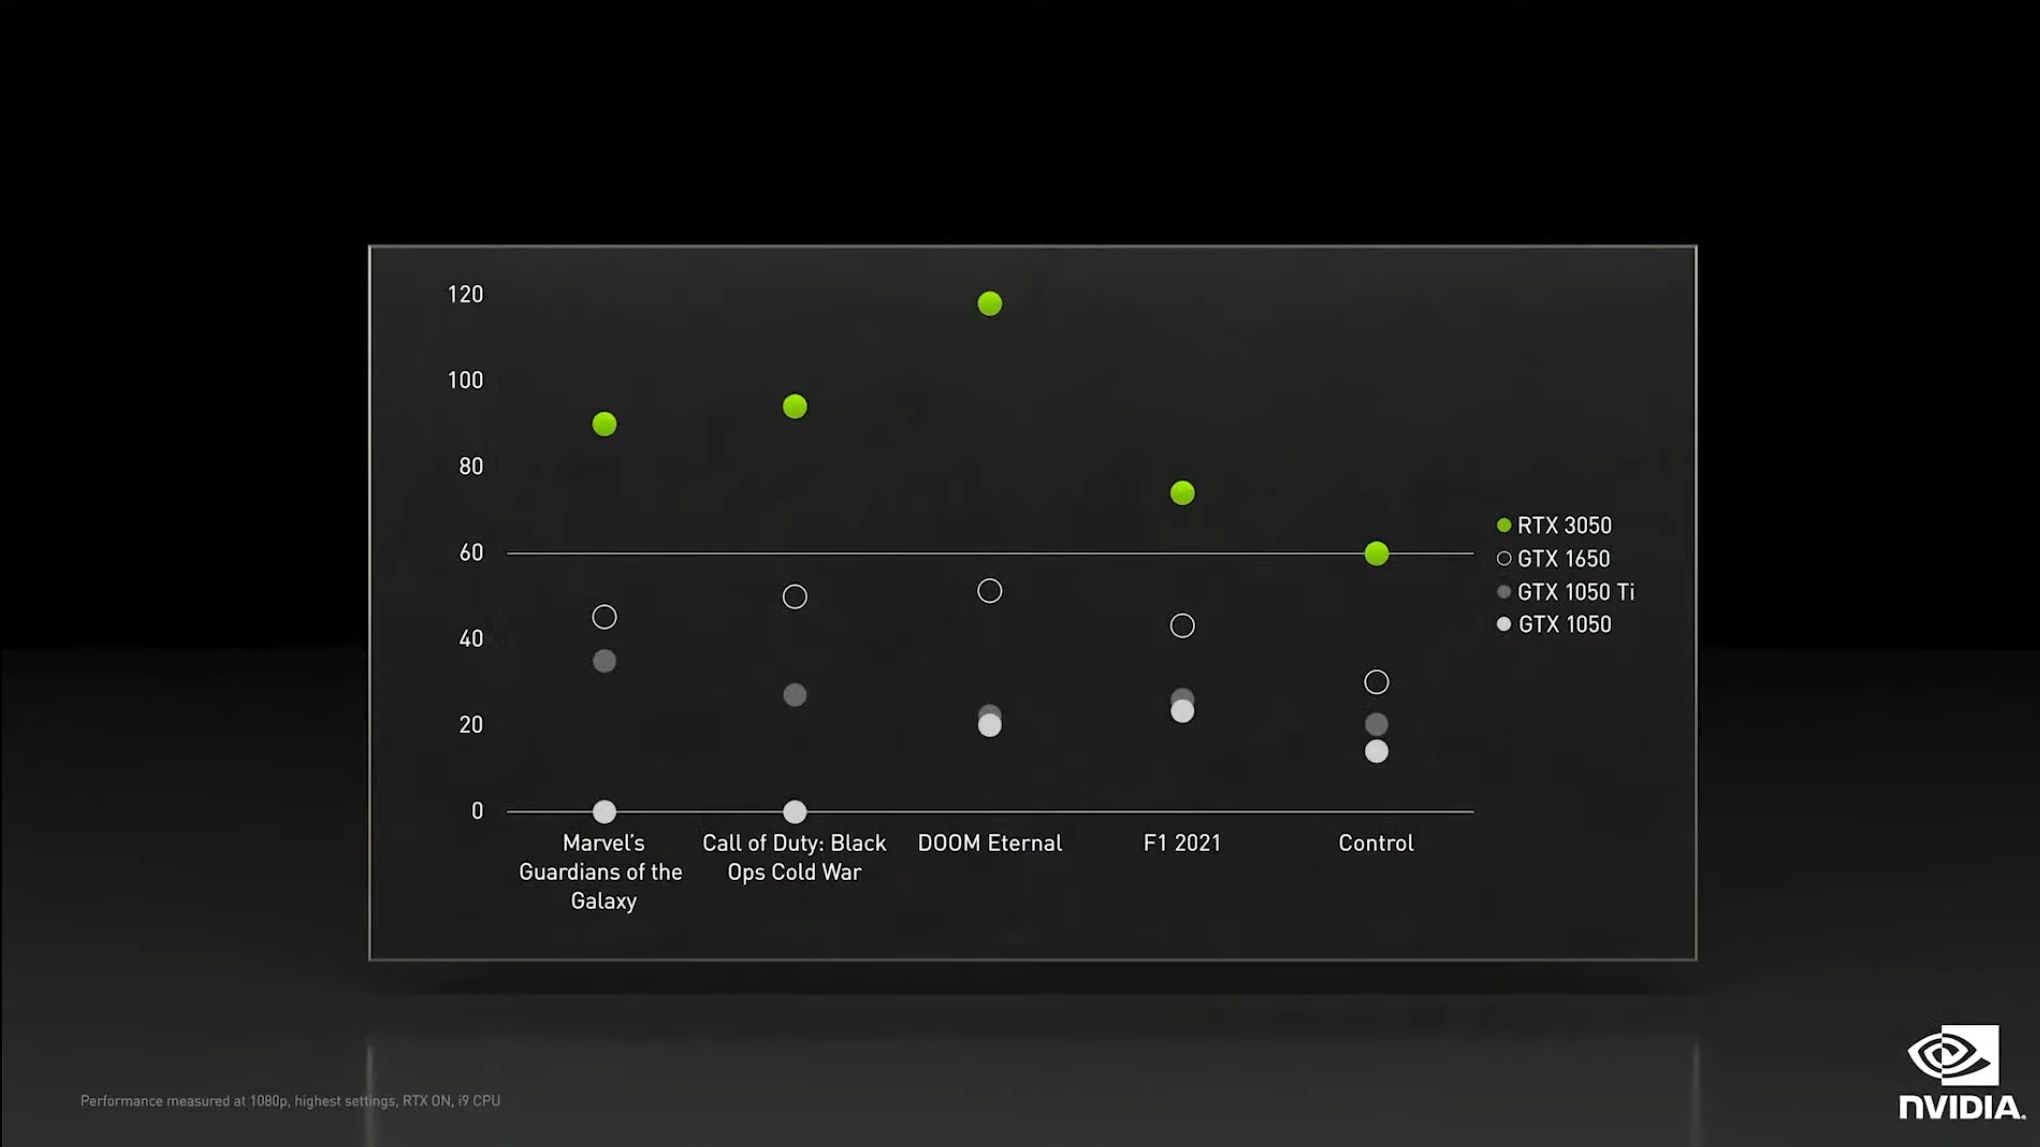 График, показывающий результаты собственных тестов Nvidia для видеокарты RTX 3050 по сравнению со старыми картами XX50.